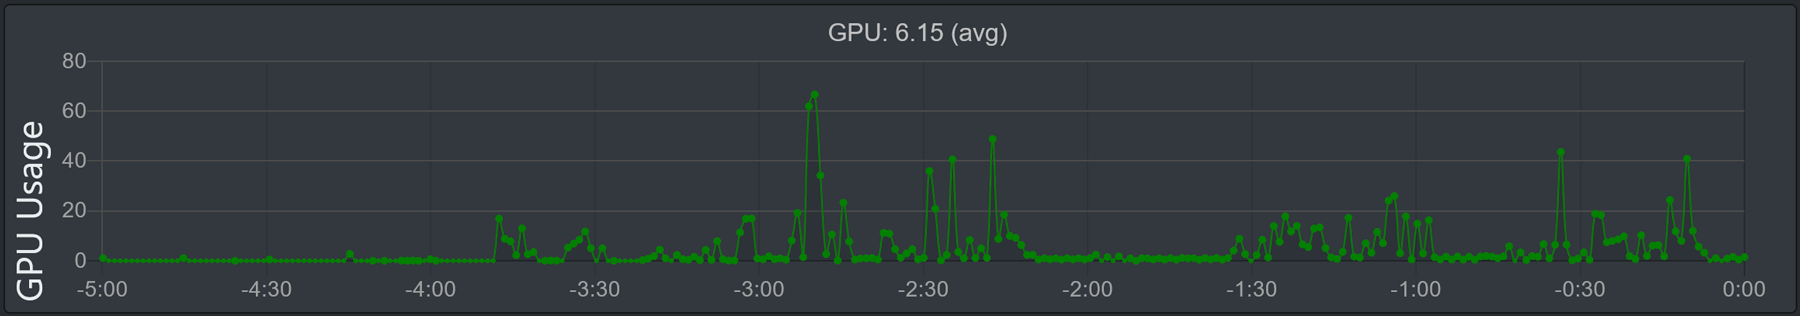 "GPU Kullanımı" grafiğinin resmi